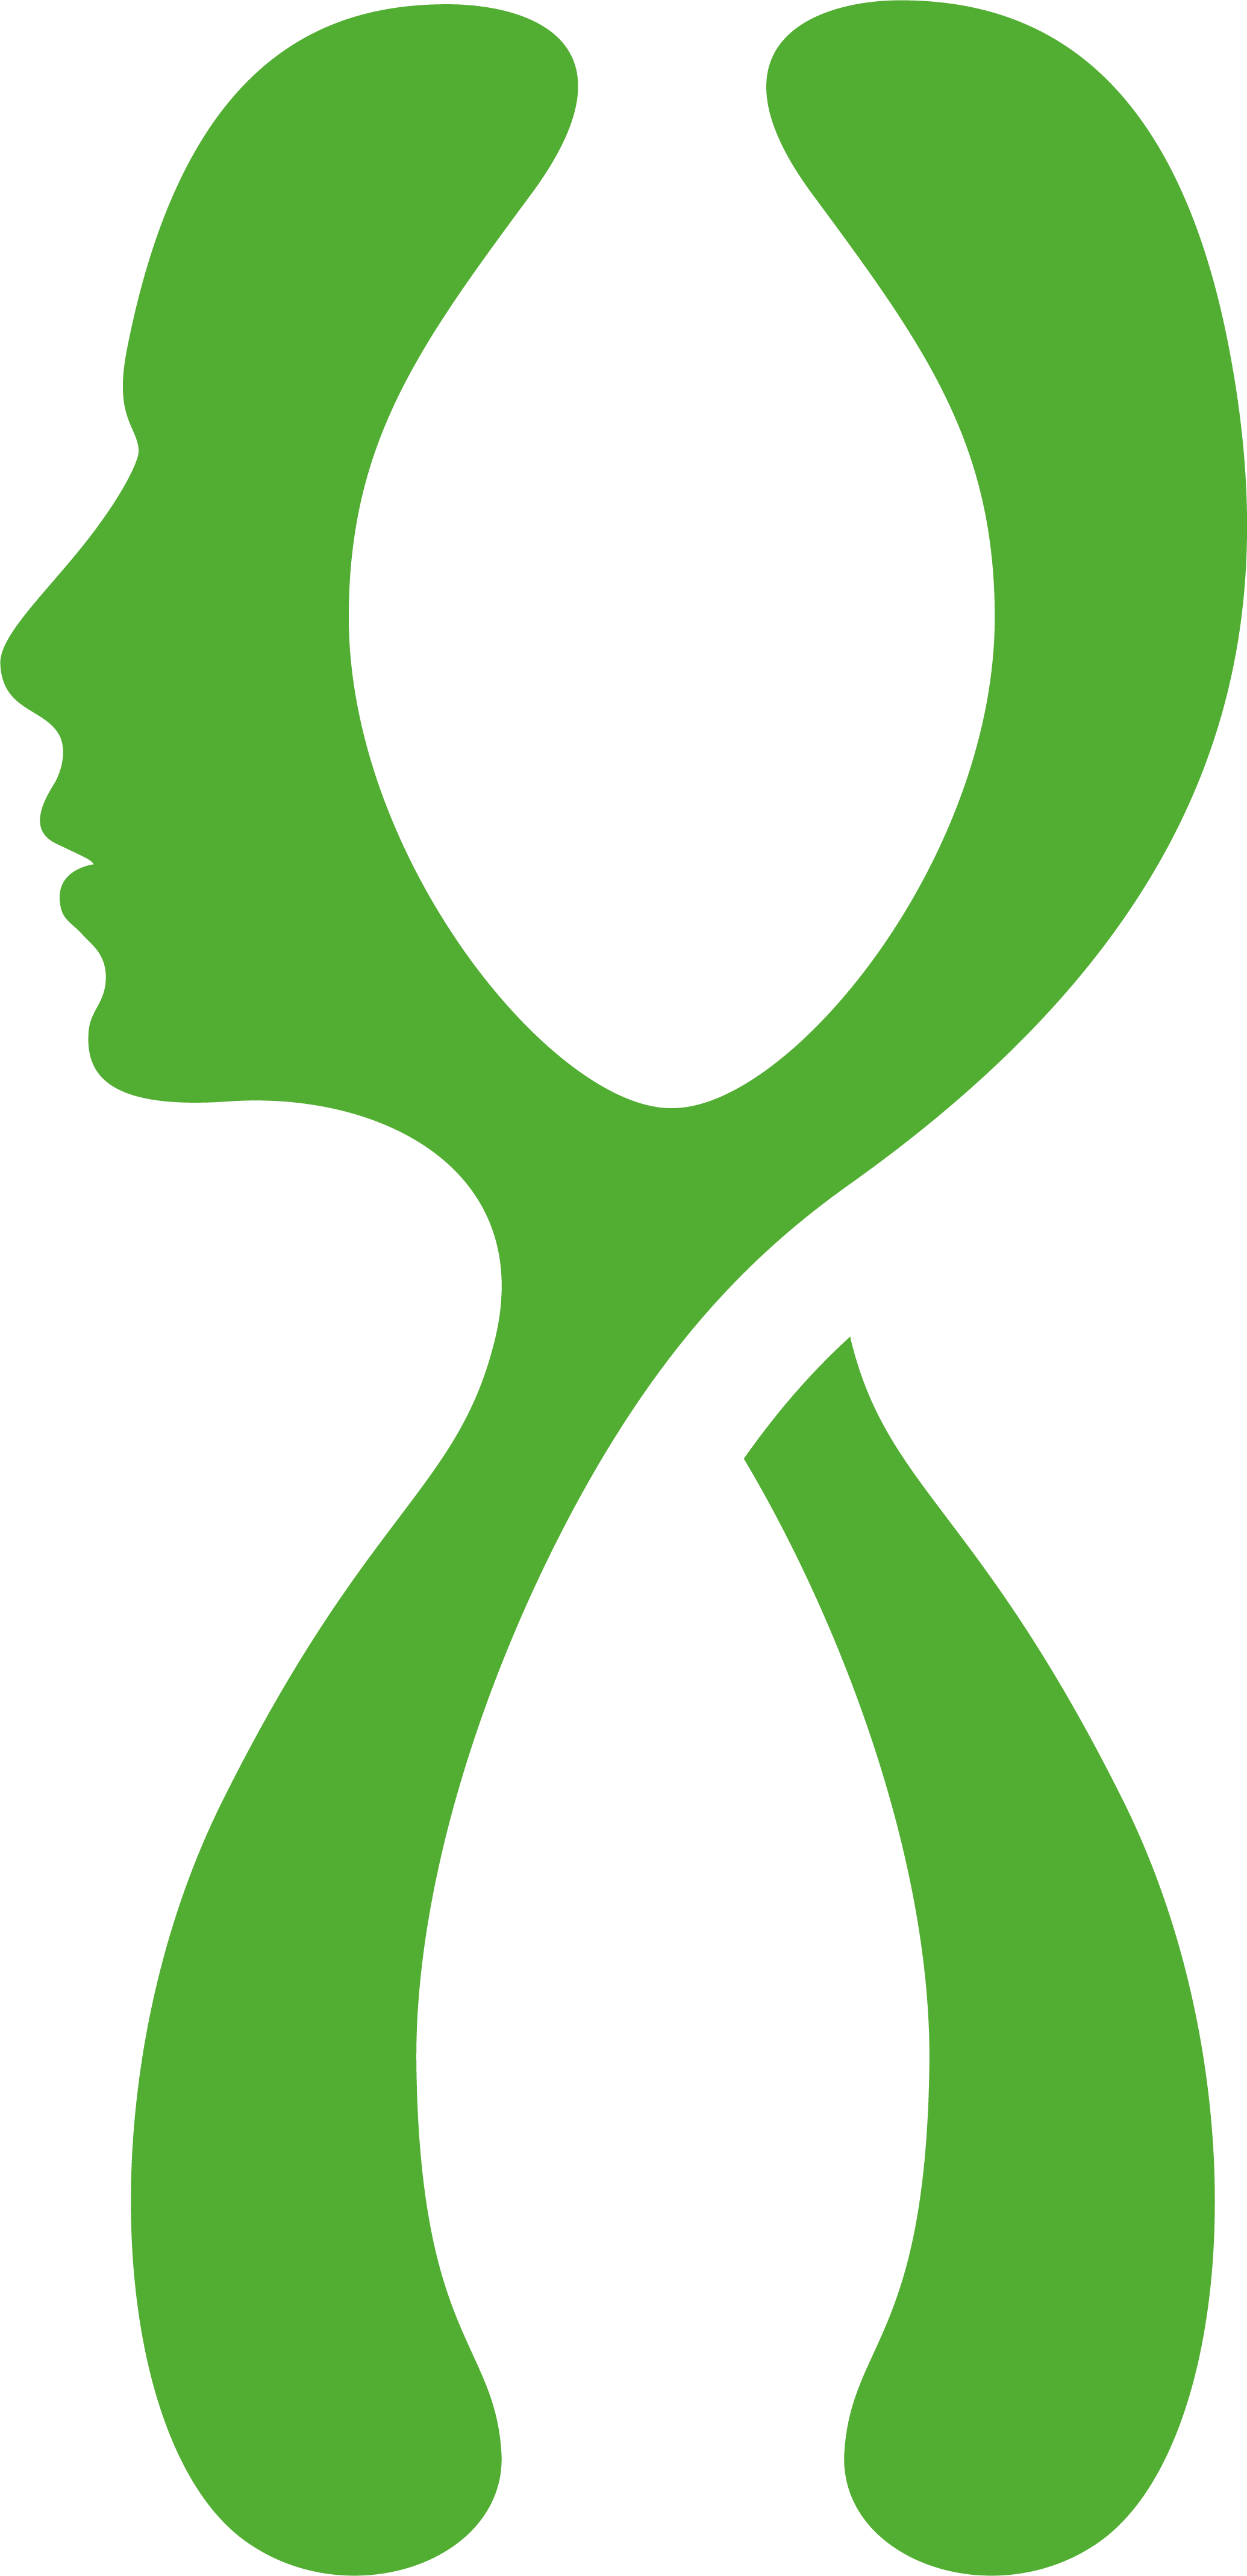 Gentechnisches Institut_Logo grün_RGB